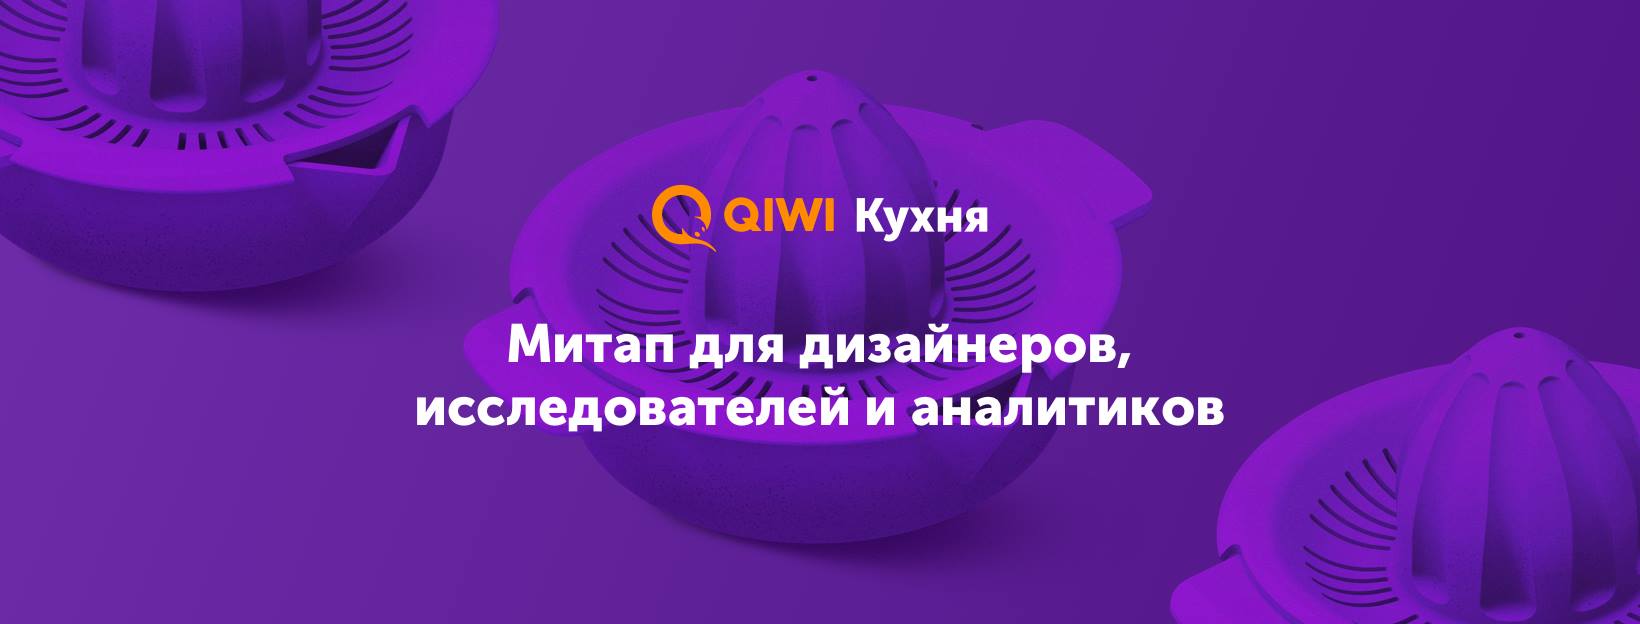 6 февраля, Москва, DI Telegraph — Большая QIWI Кухня о дизайне продуктов - 1